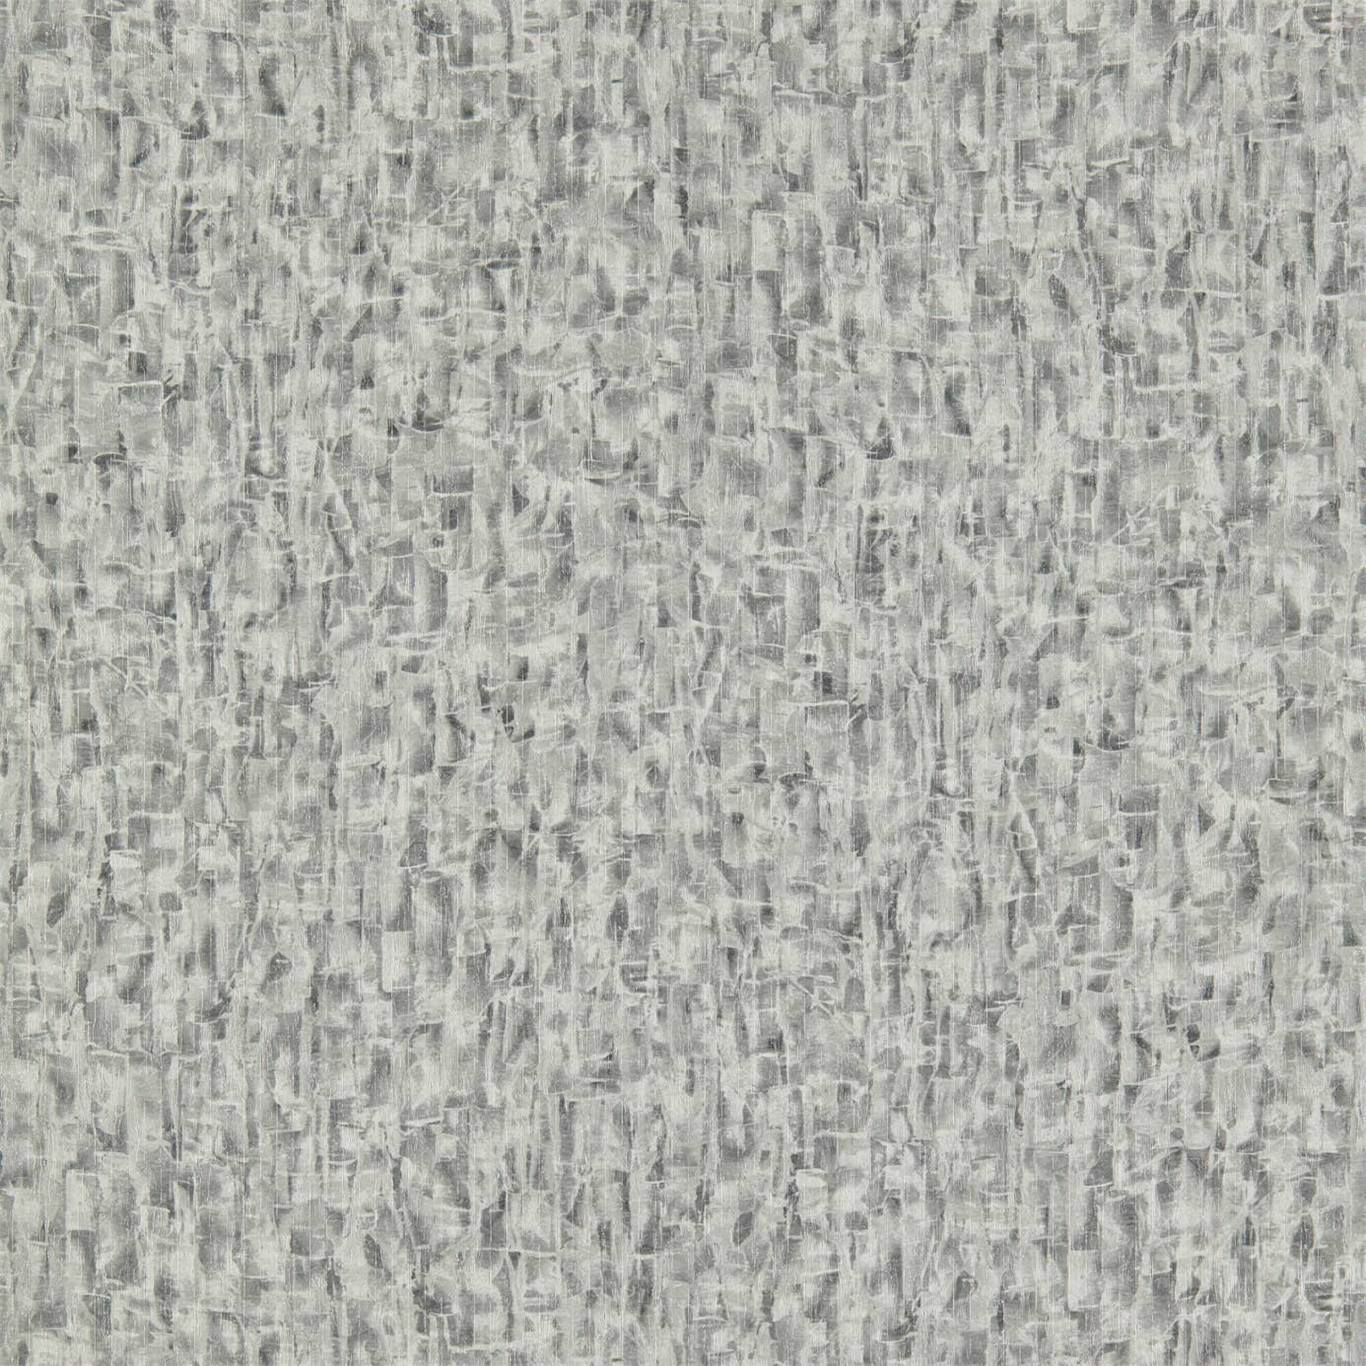 Anthology Zircon Concrete / Quartz Wallpaper by HAR